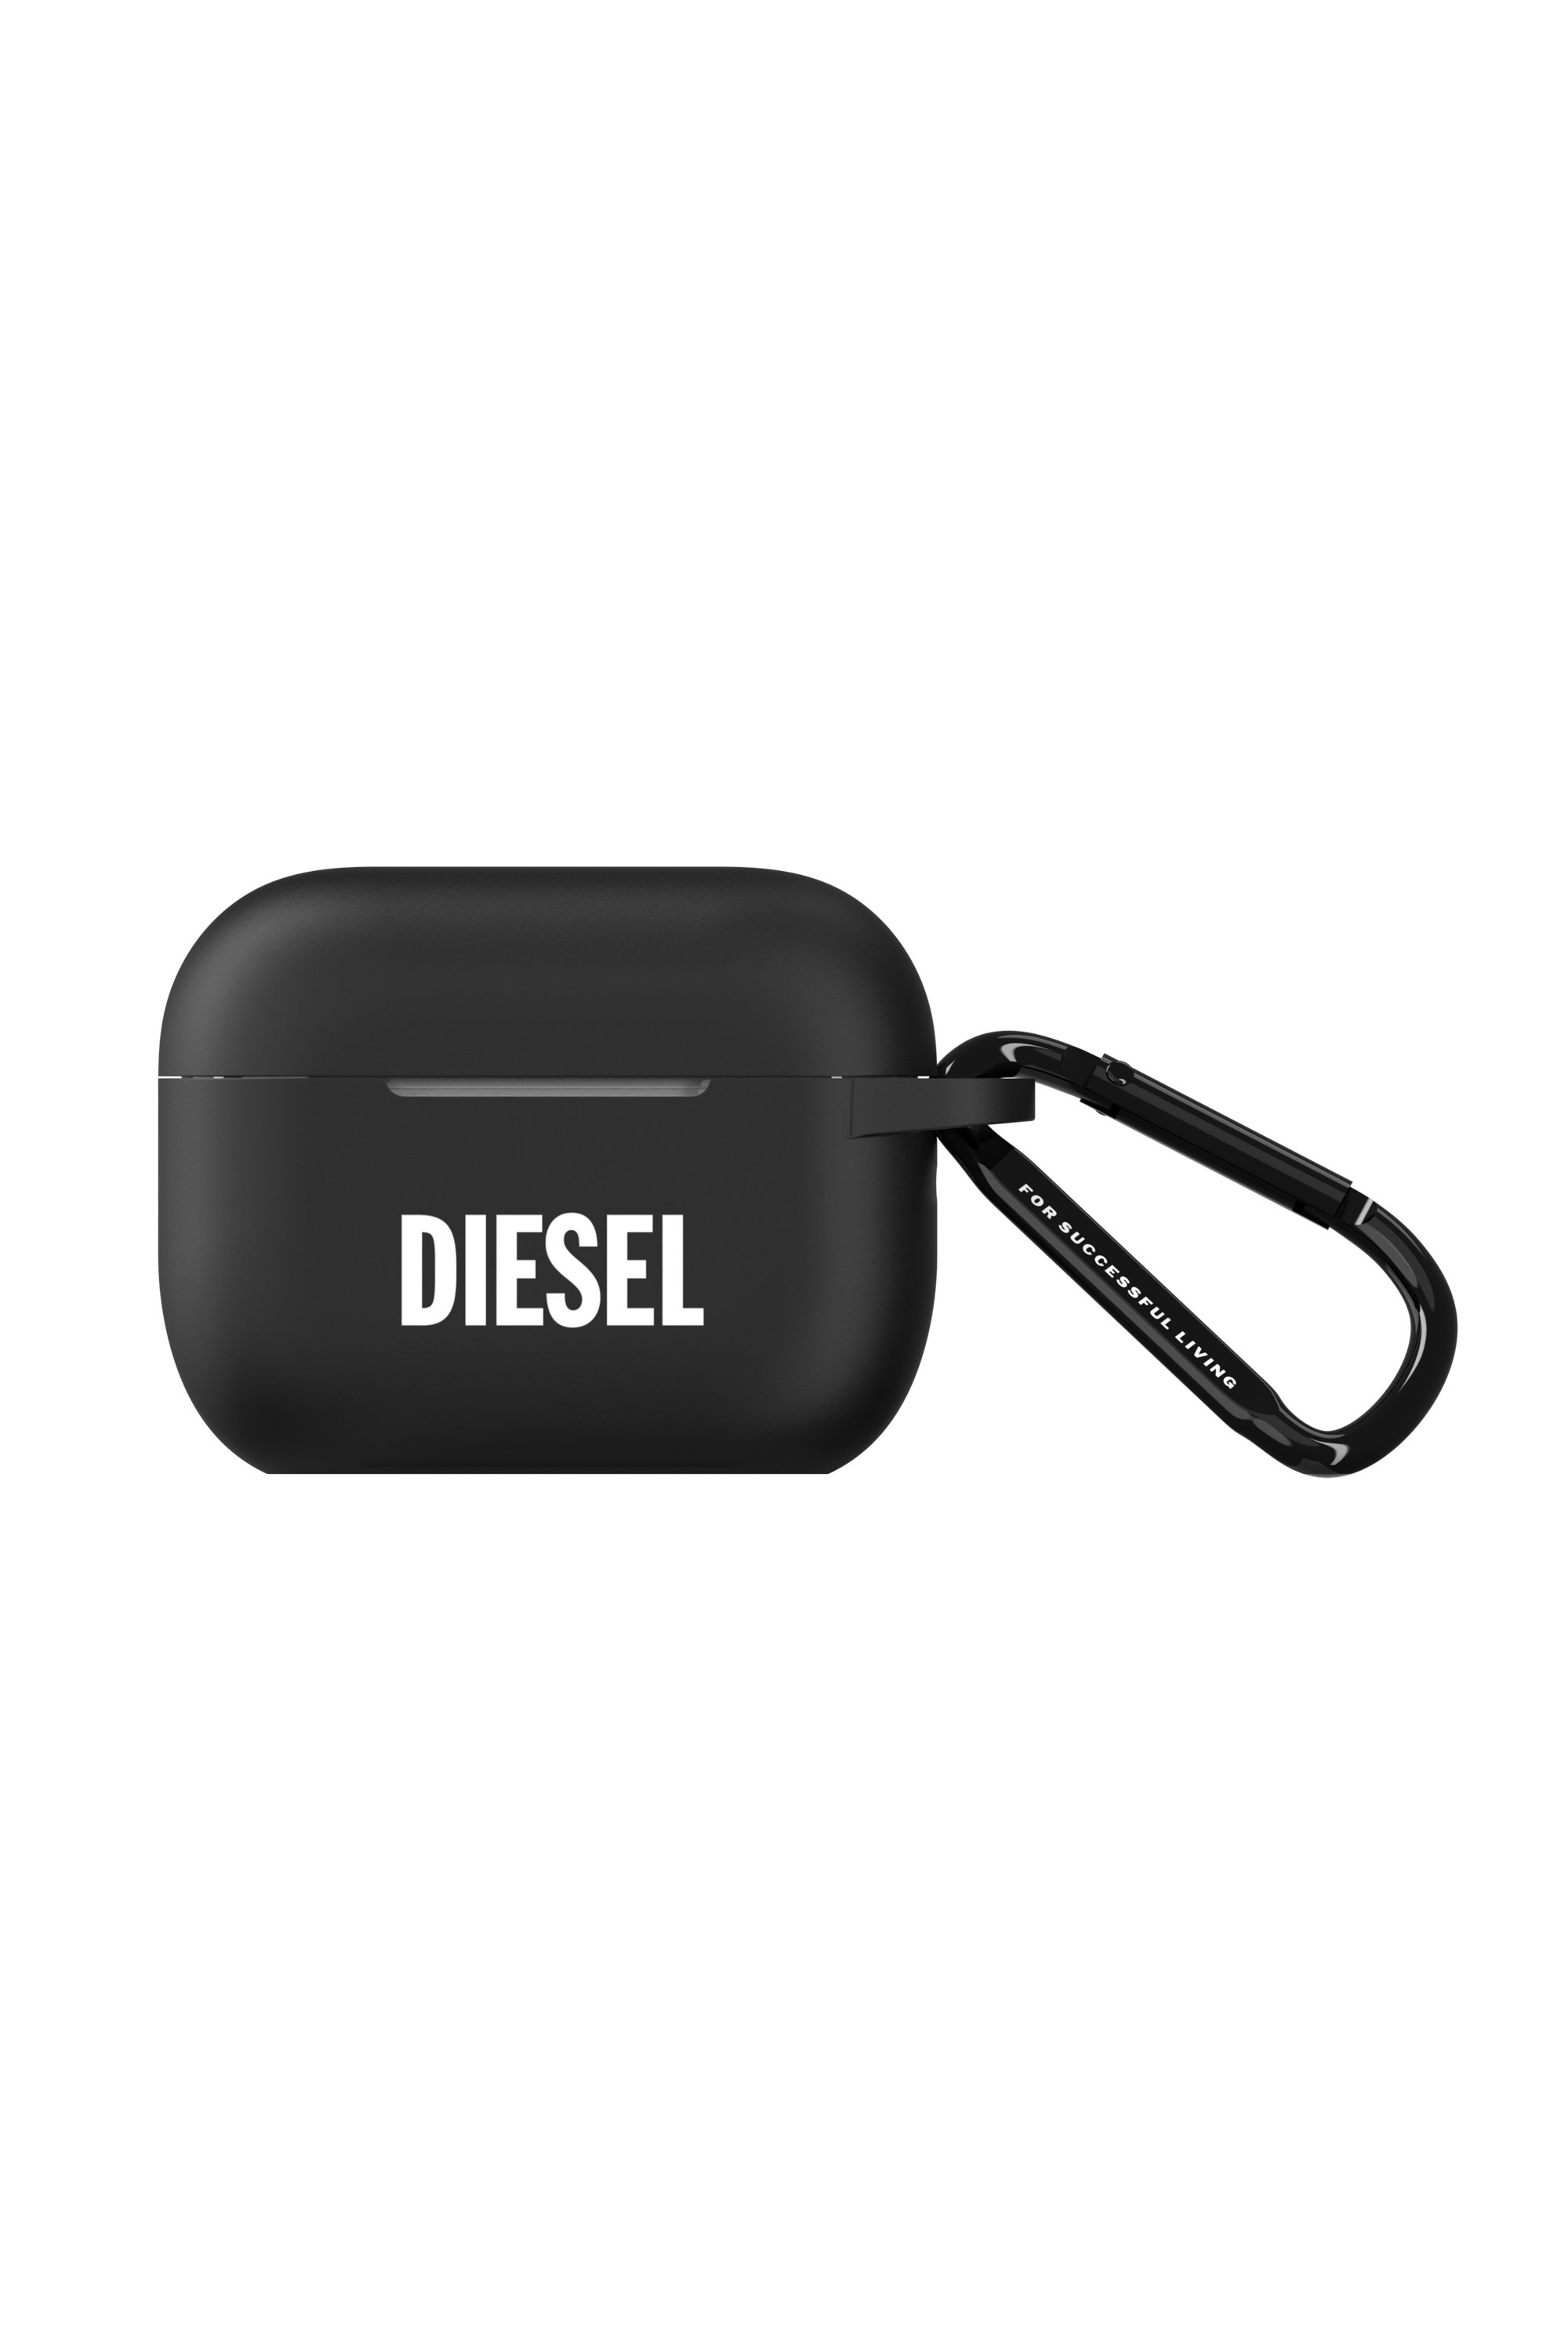 Diesel - 52955 AIRPOD CASE, Black - Image 1